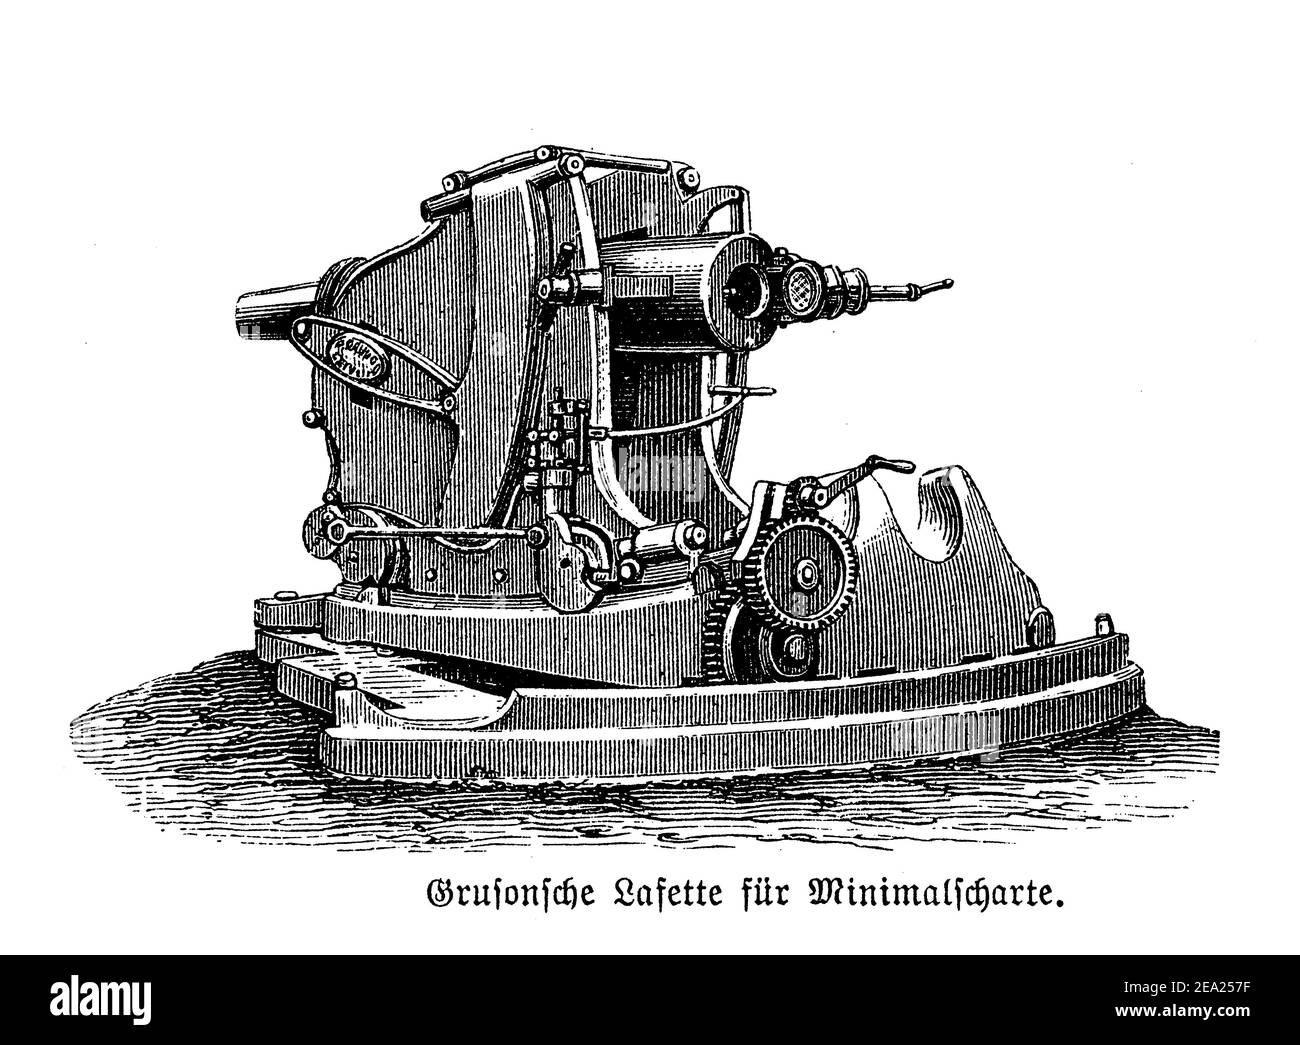 Gruson revólver montado sobre ruedas, superrelevado casemate carriage para la defensa de alcance cercano, finales del siglo 19 Foto de stock